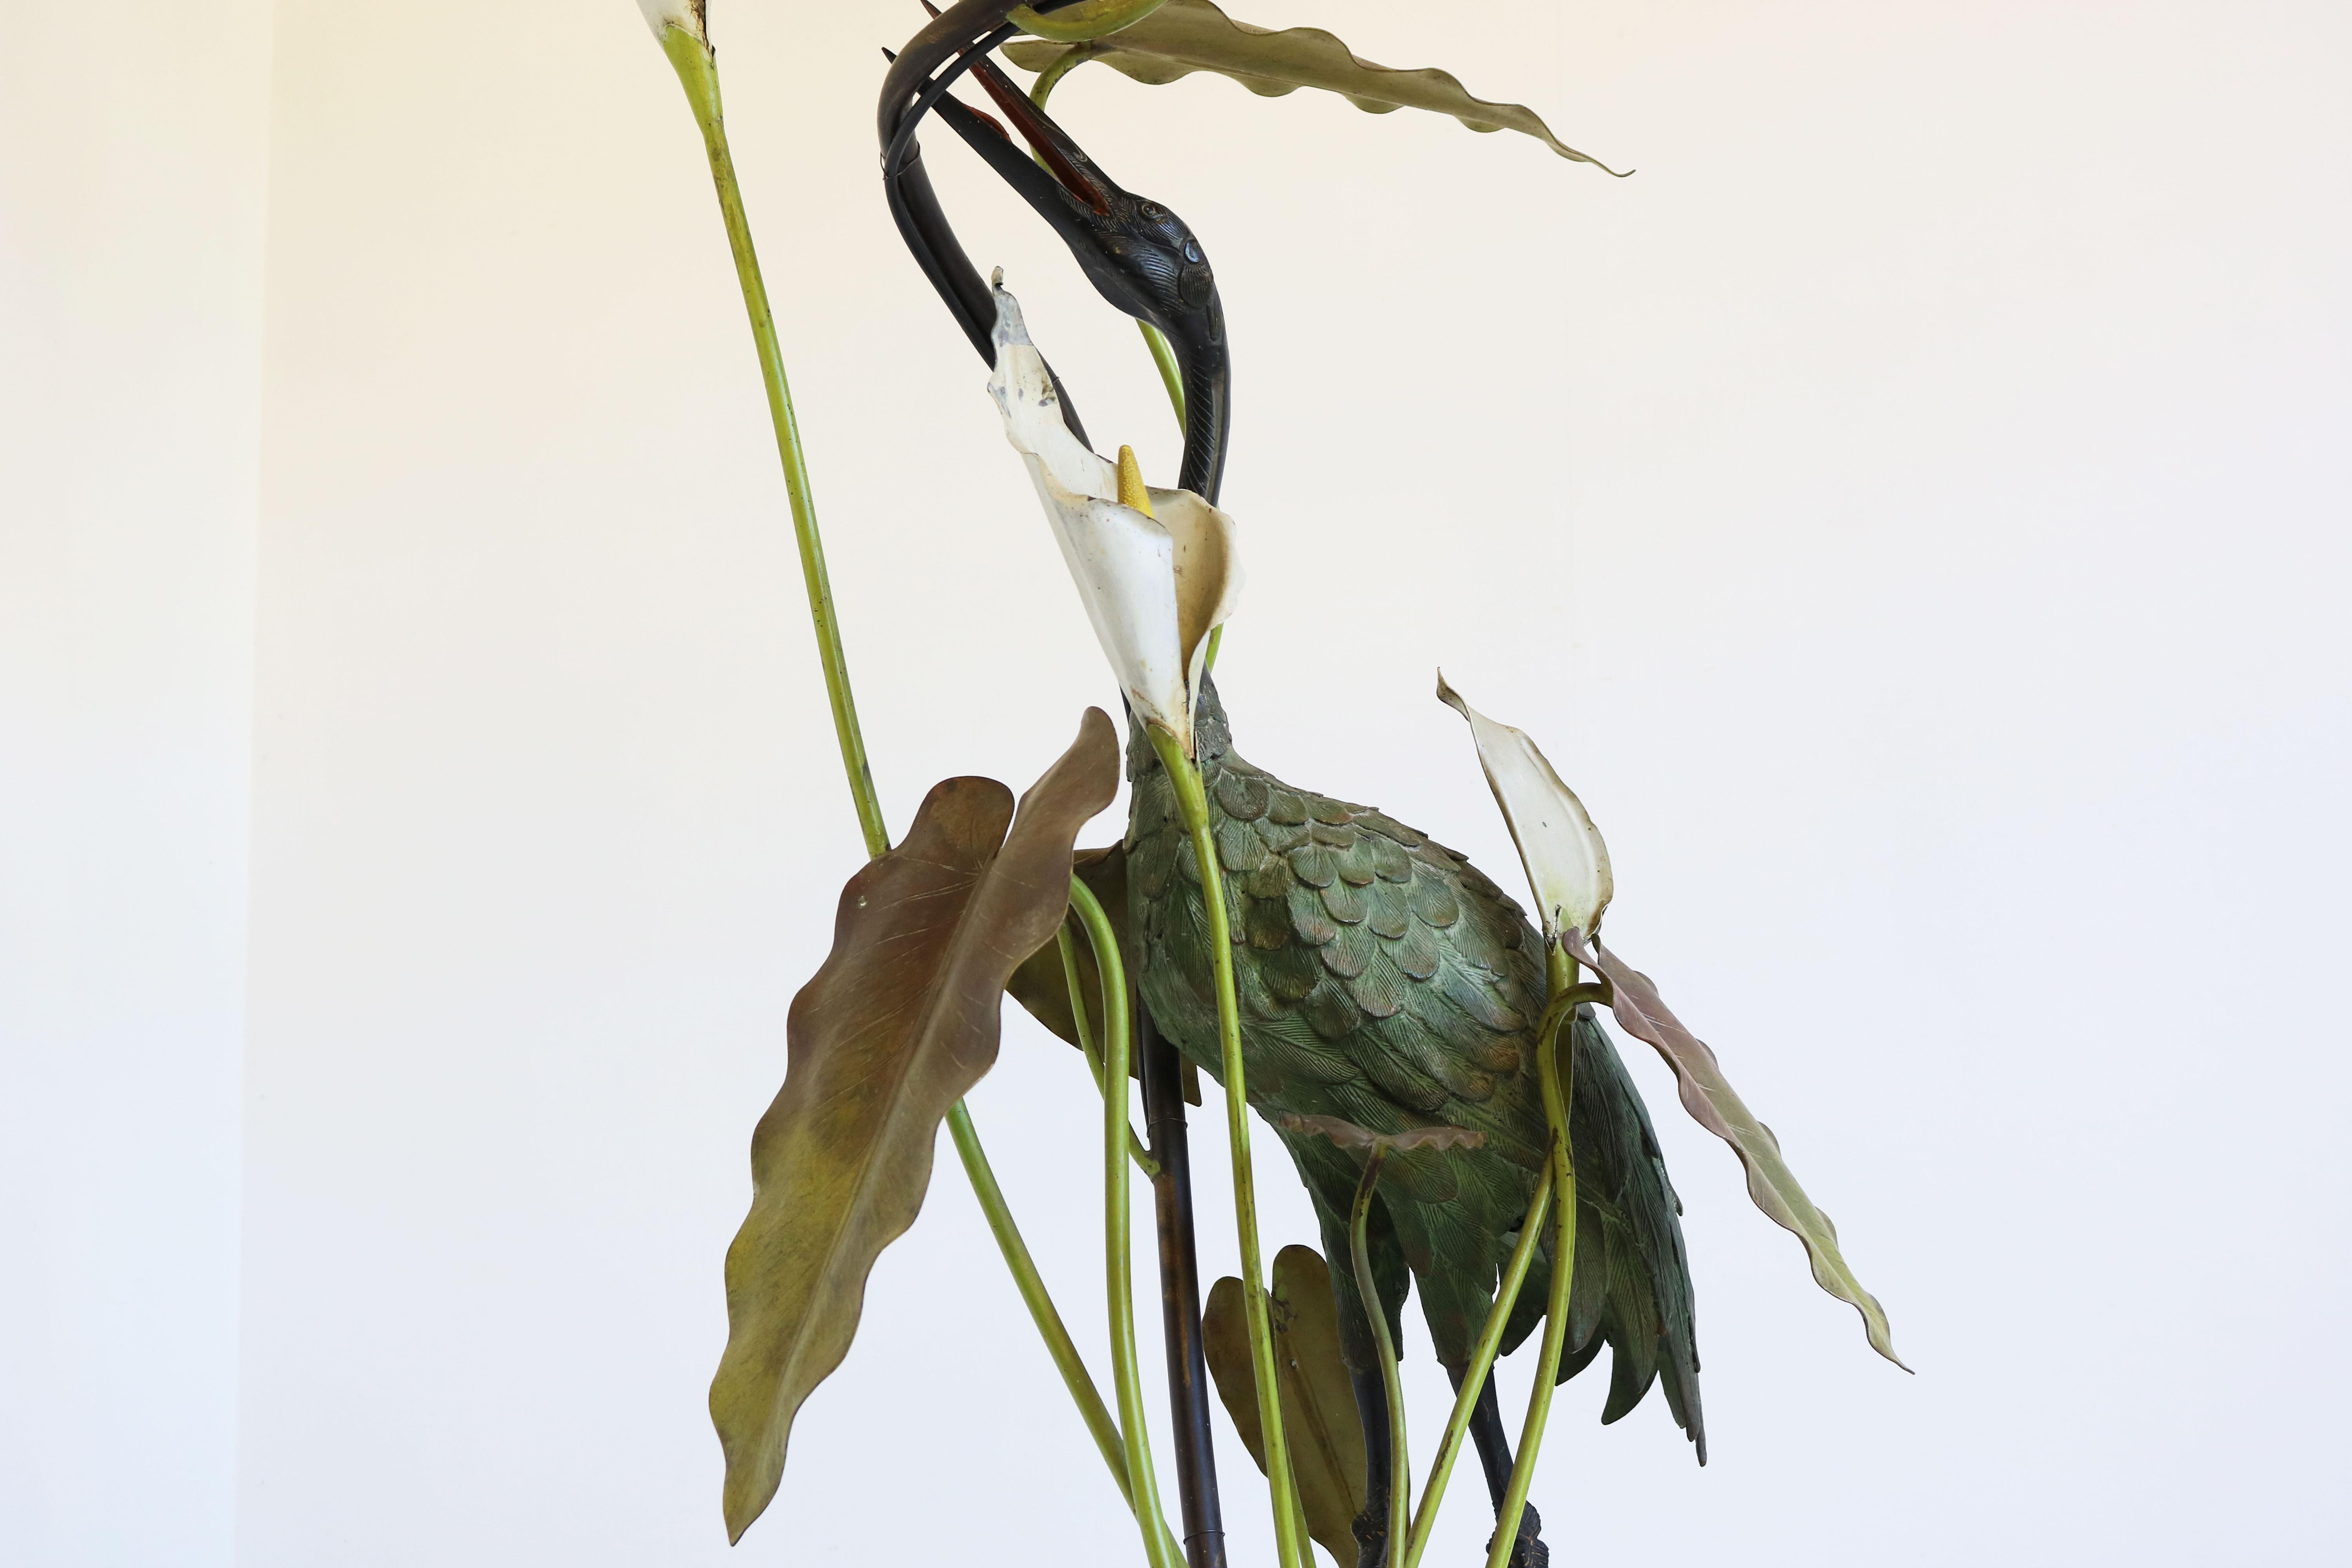 Exquisit und selten! Diese französische Jugendstil-Stehlampe aus patinierter Bronze zeigt einen Reiher zwischen Blättern und Lilienpads, datiert Anfang 1900. 
Der Reiher steht über einem Wasserlauf, versteckt zwischen Blättern und Blumen.